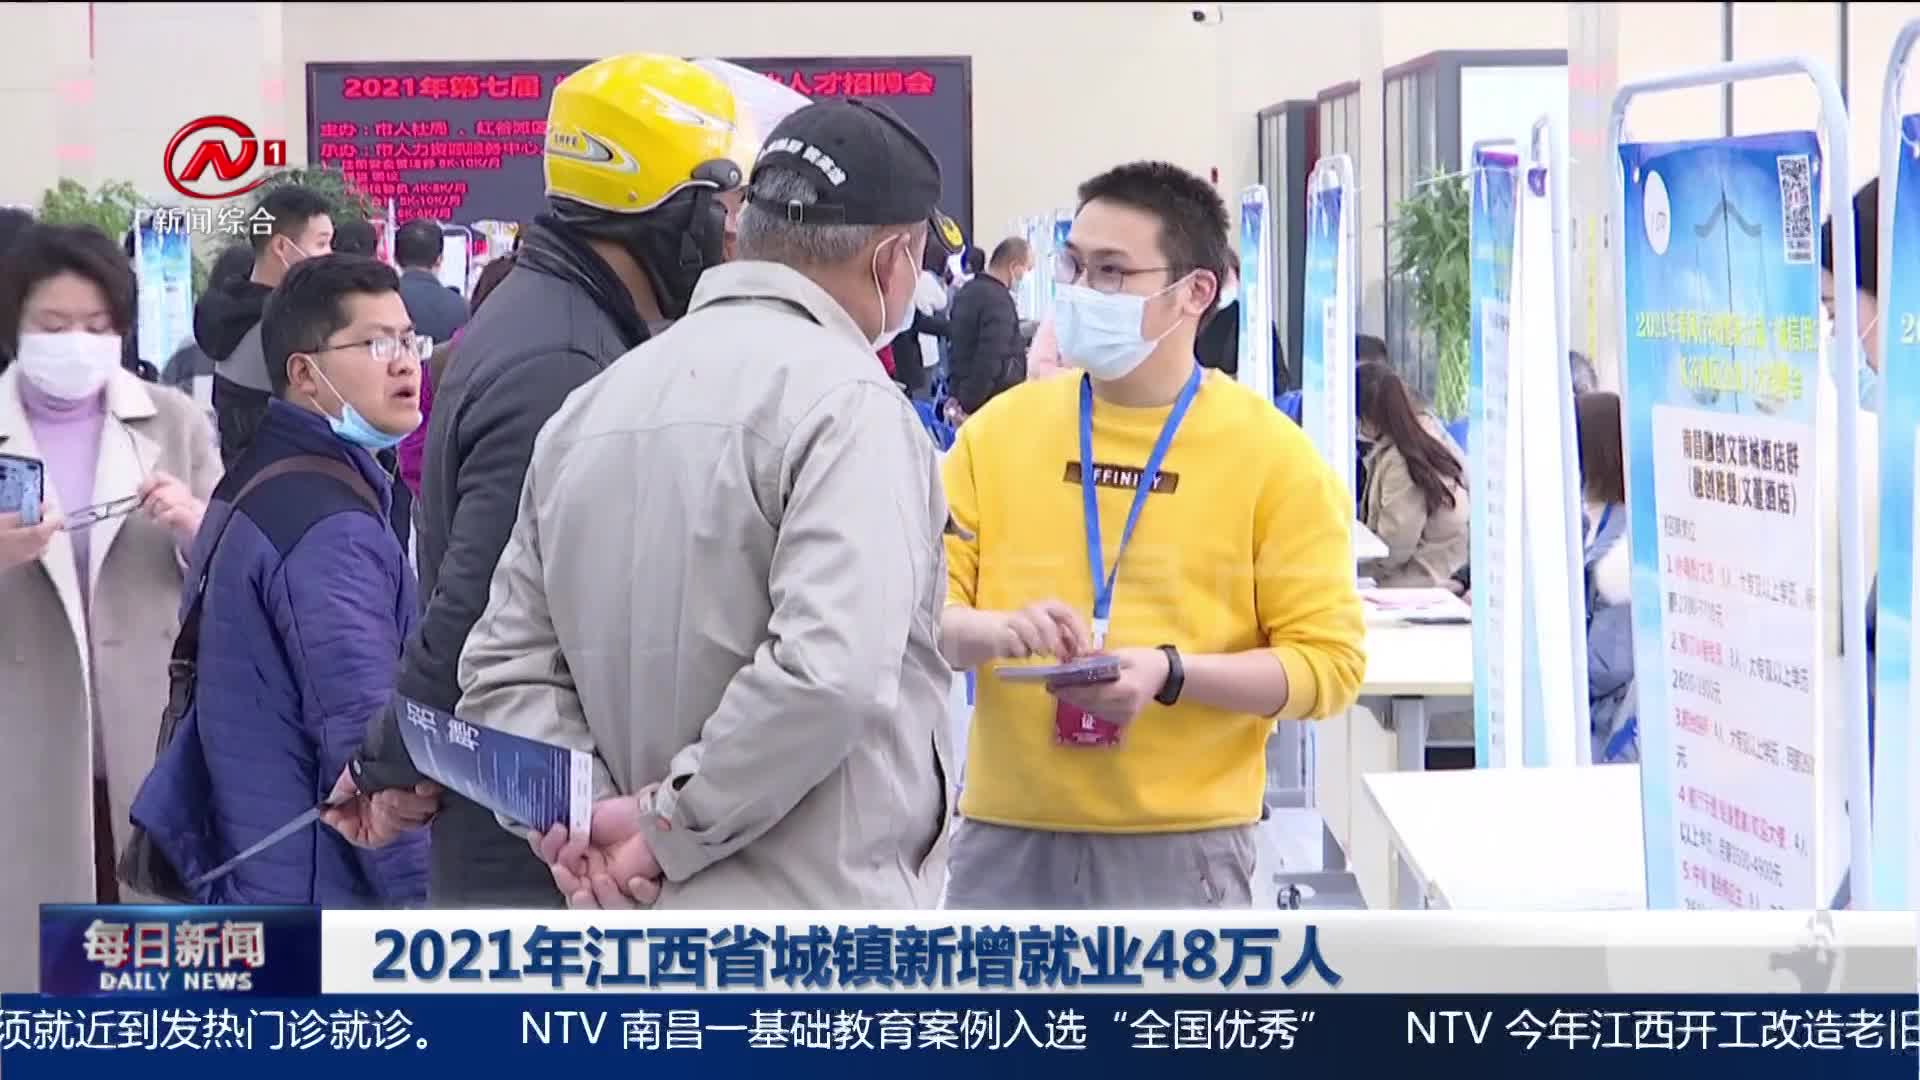 2021年江西省城镇新增就业48万人